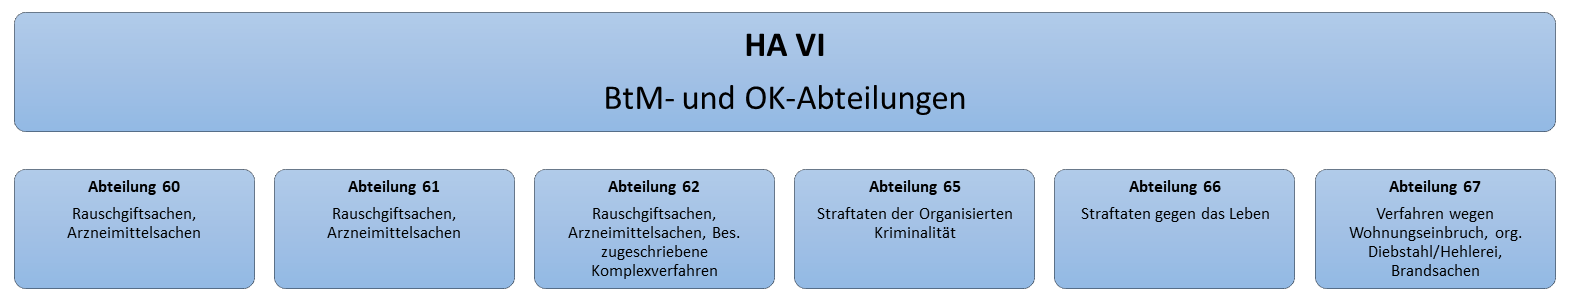 Organigramm der Hauptabteilung VI der StA Hamburg